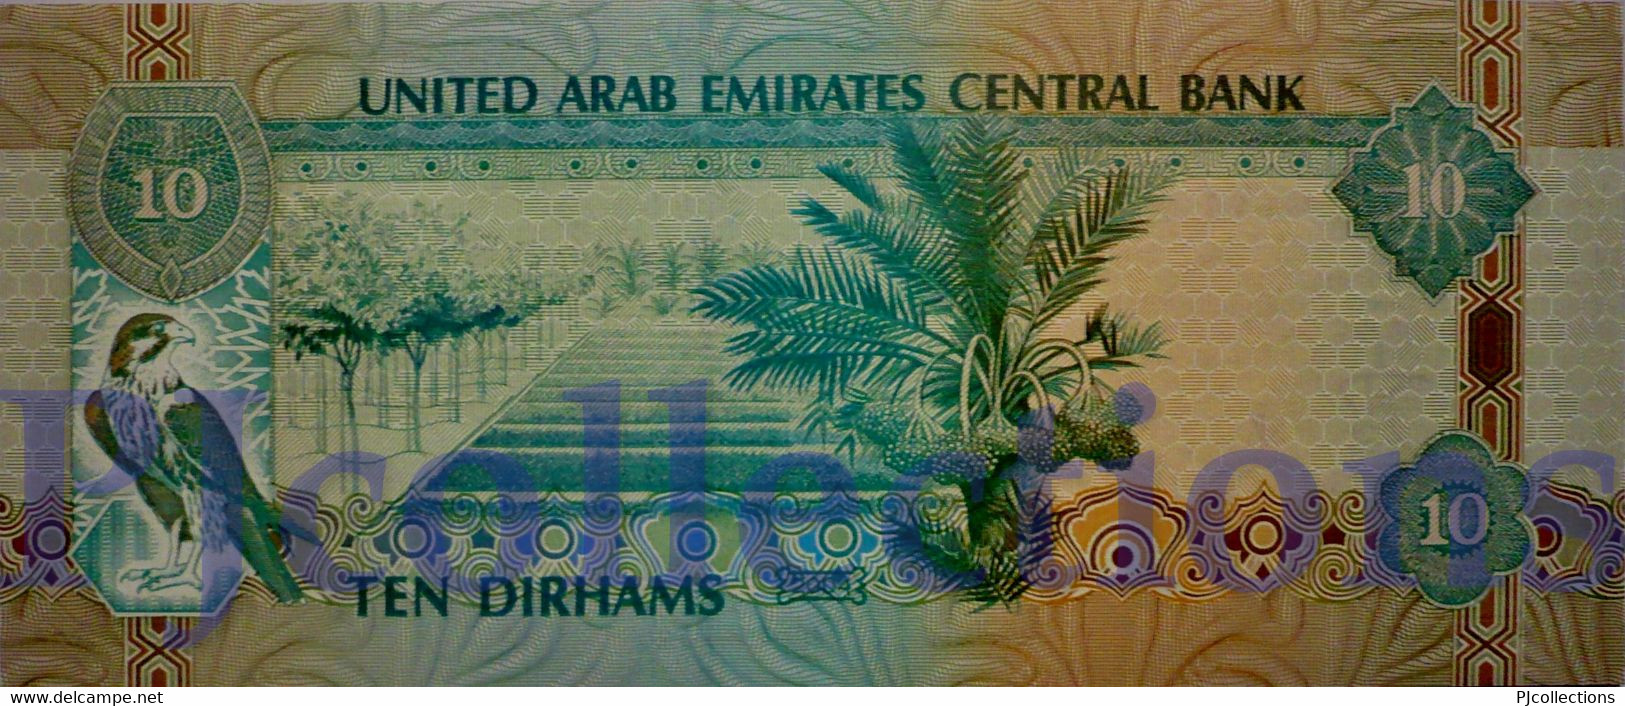 UNITED ARAB EMIRATES 10 DIRHAMS 2004 PICK 20c UNC - Emiratos Arabes Unidos